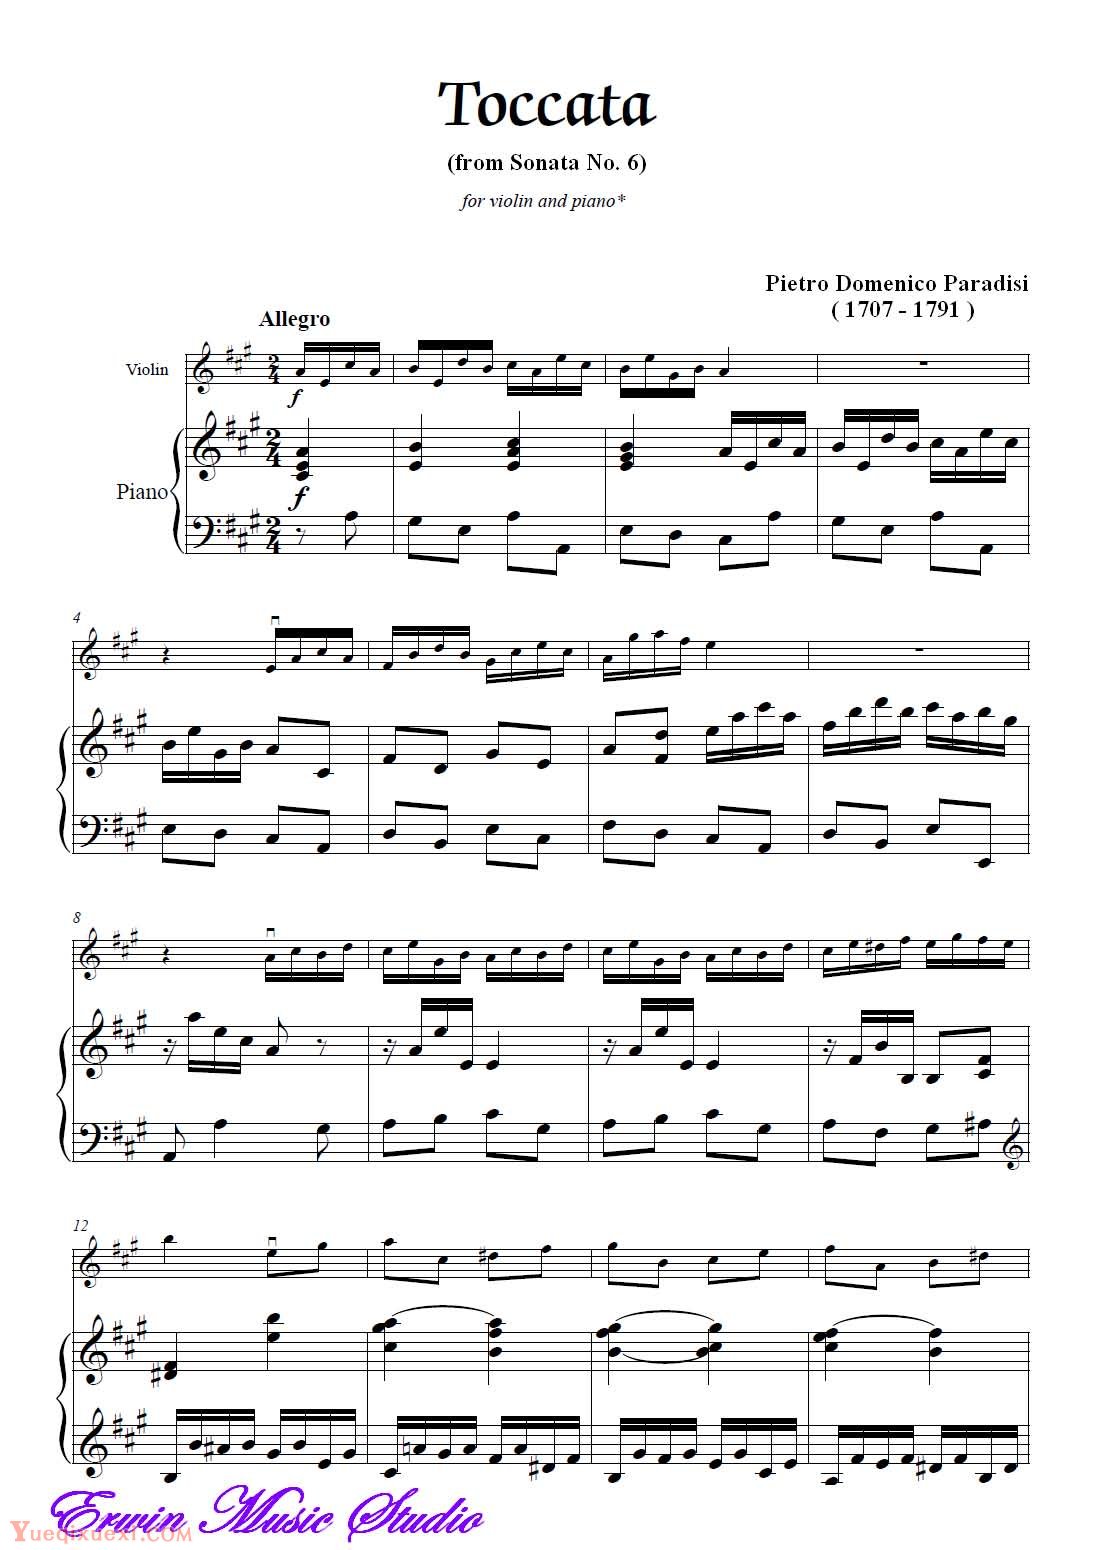 彼得罗 皮埃尔多米尼克 帕拉迪斯-托卡塔 选自第6奏鸣曲 钢琴伴奏Piano